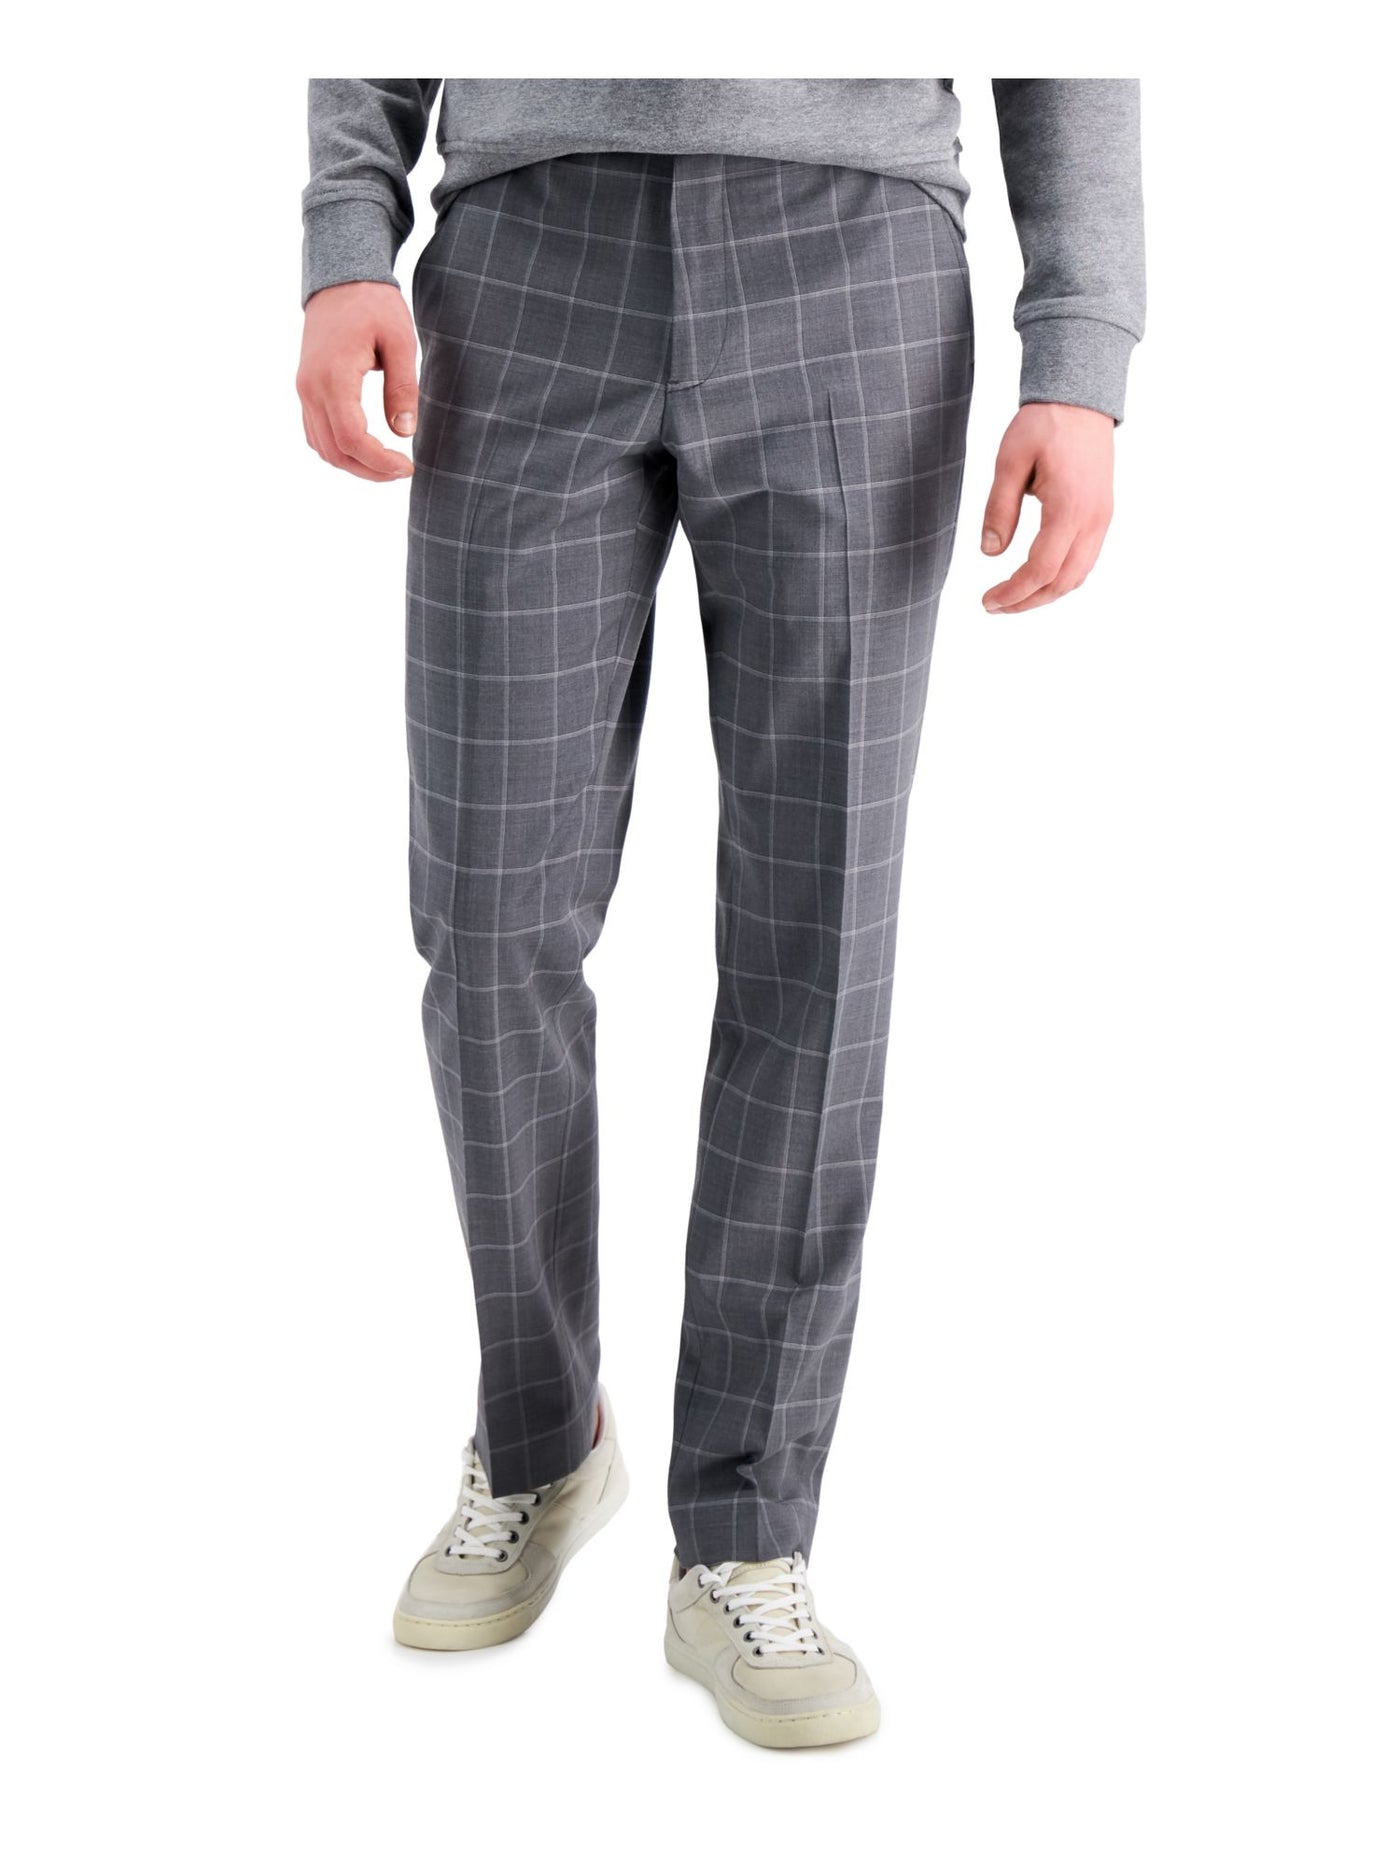 ARMANI EXCHANGE Mens Gray Flat Front, Plaid Slim Fit Stretch Suit Separate Pants 32 Waist